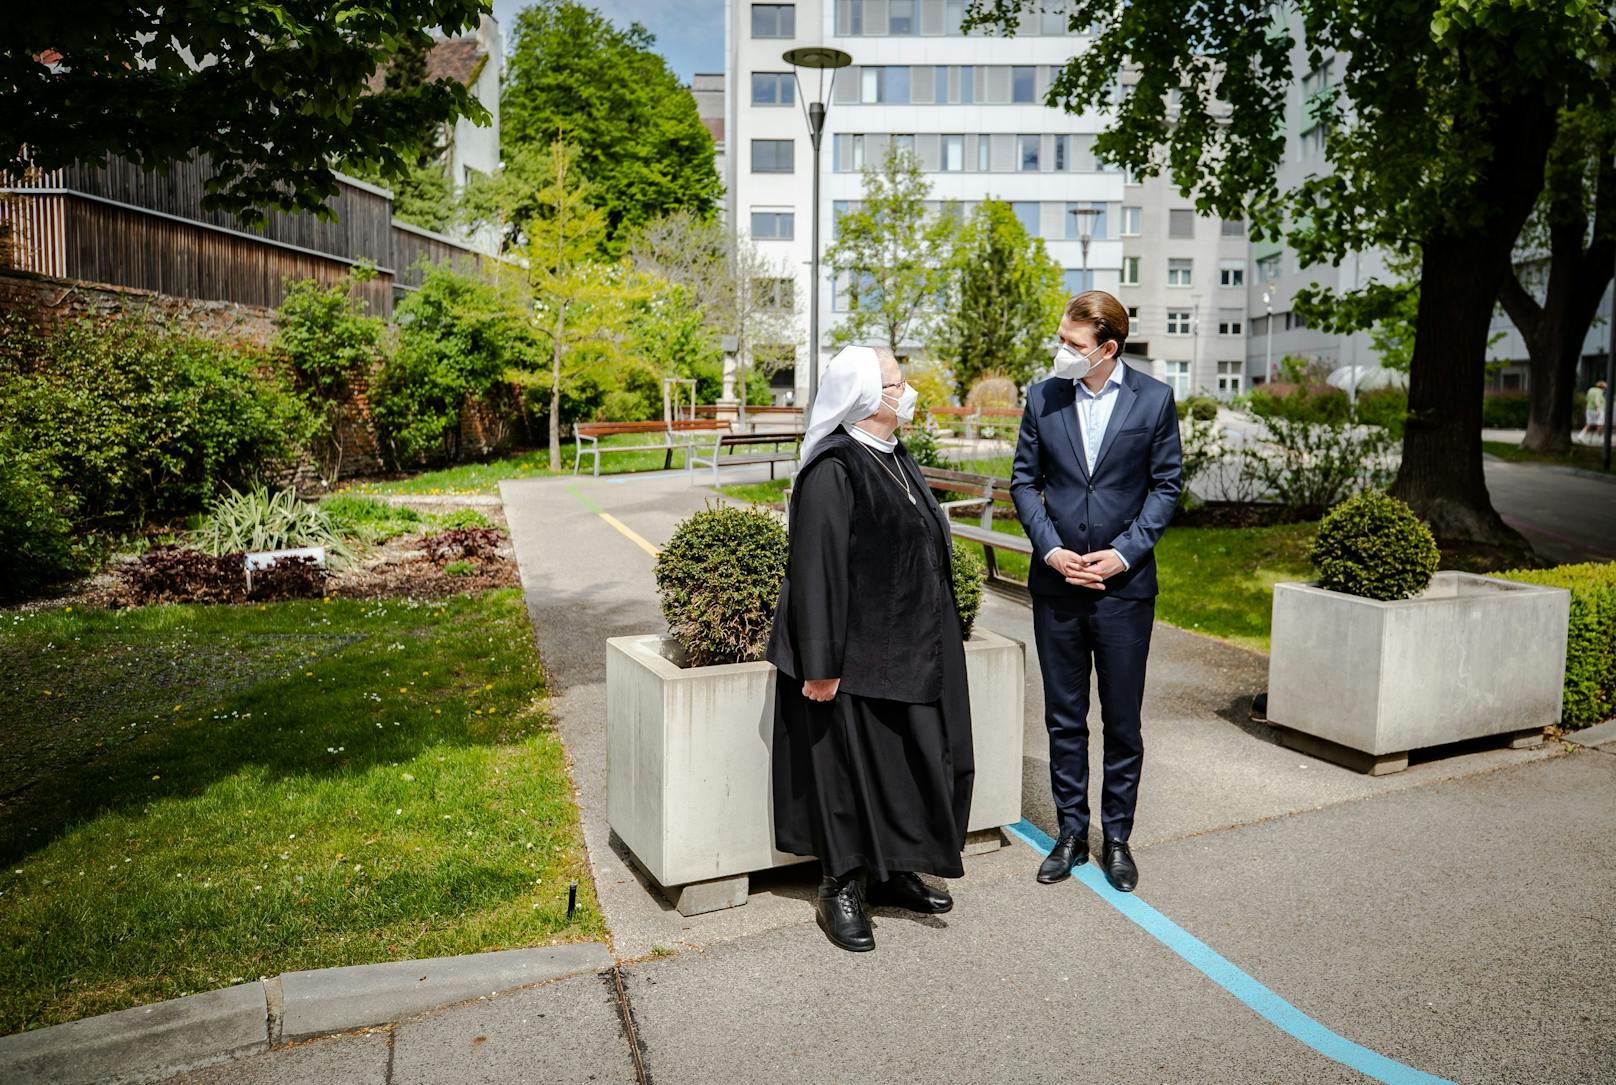 Bundeskanzler Sebastian Kurz und Vizekanzler Werner Kogler besuchten die "Barmherzigen Schwestern" in Wien